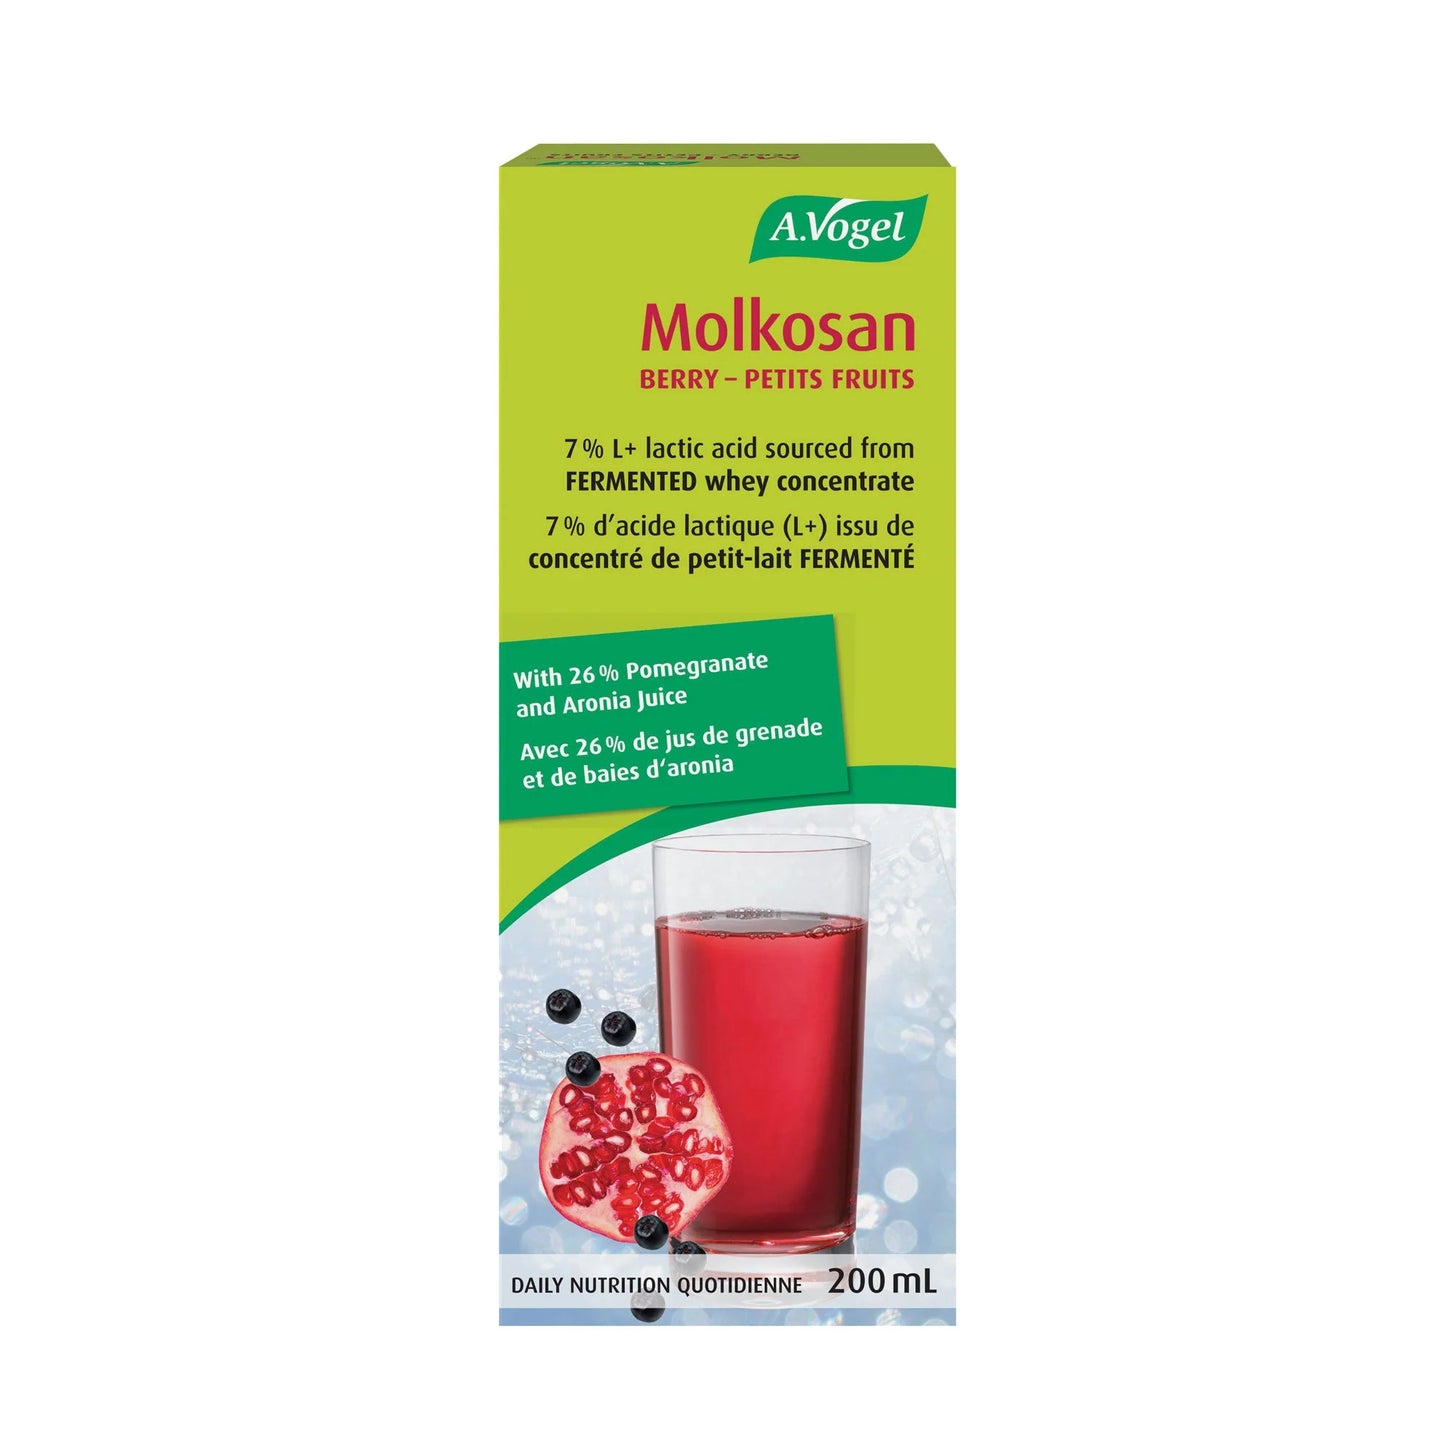 Molkosan Petits Fruits - Concentré de petit-lait lacto-fermenté- A.Vogel (200 ml)